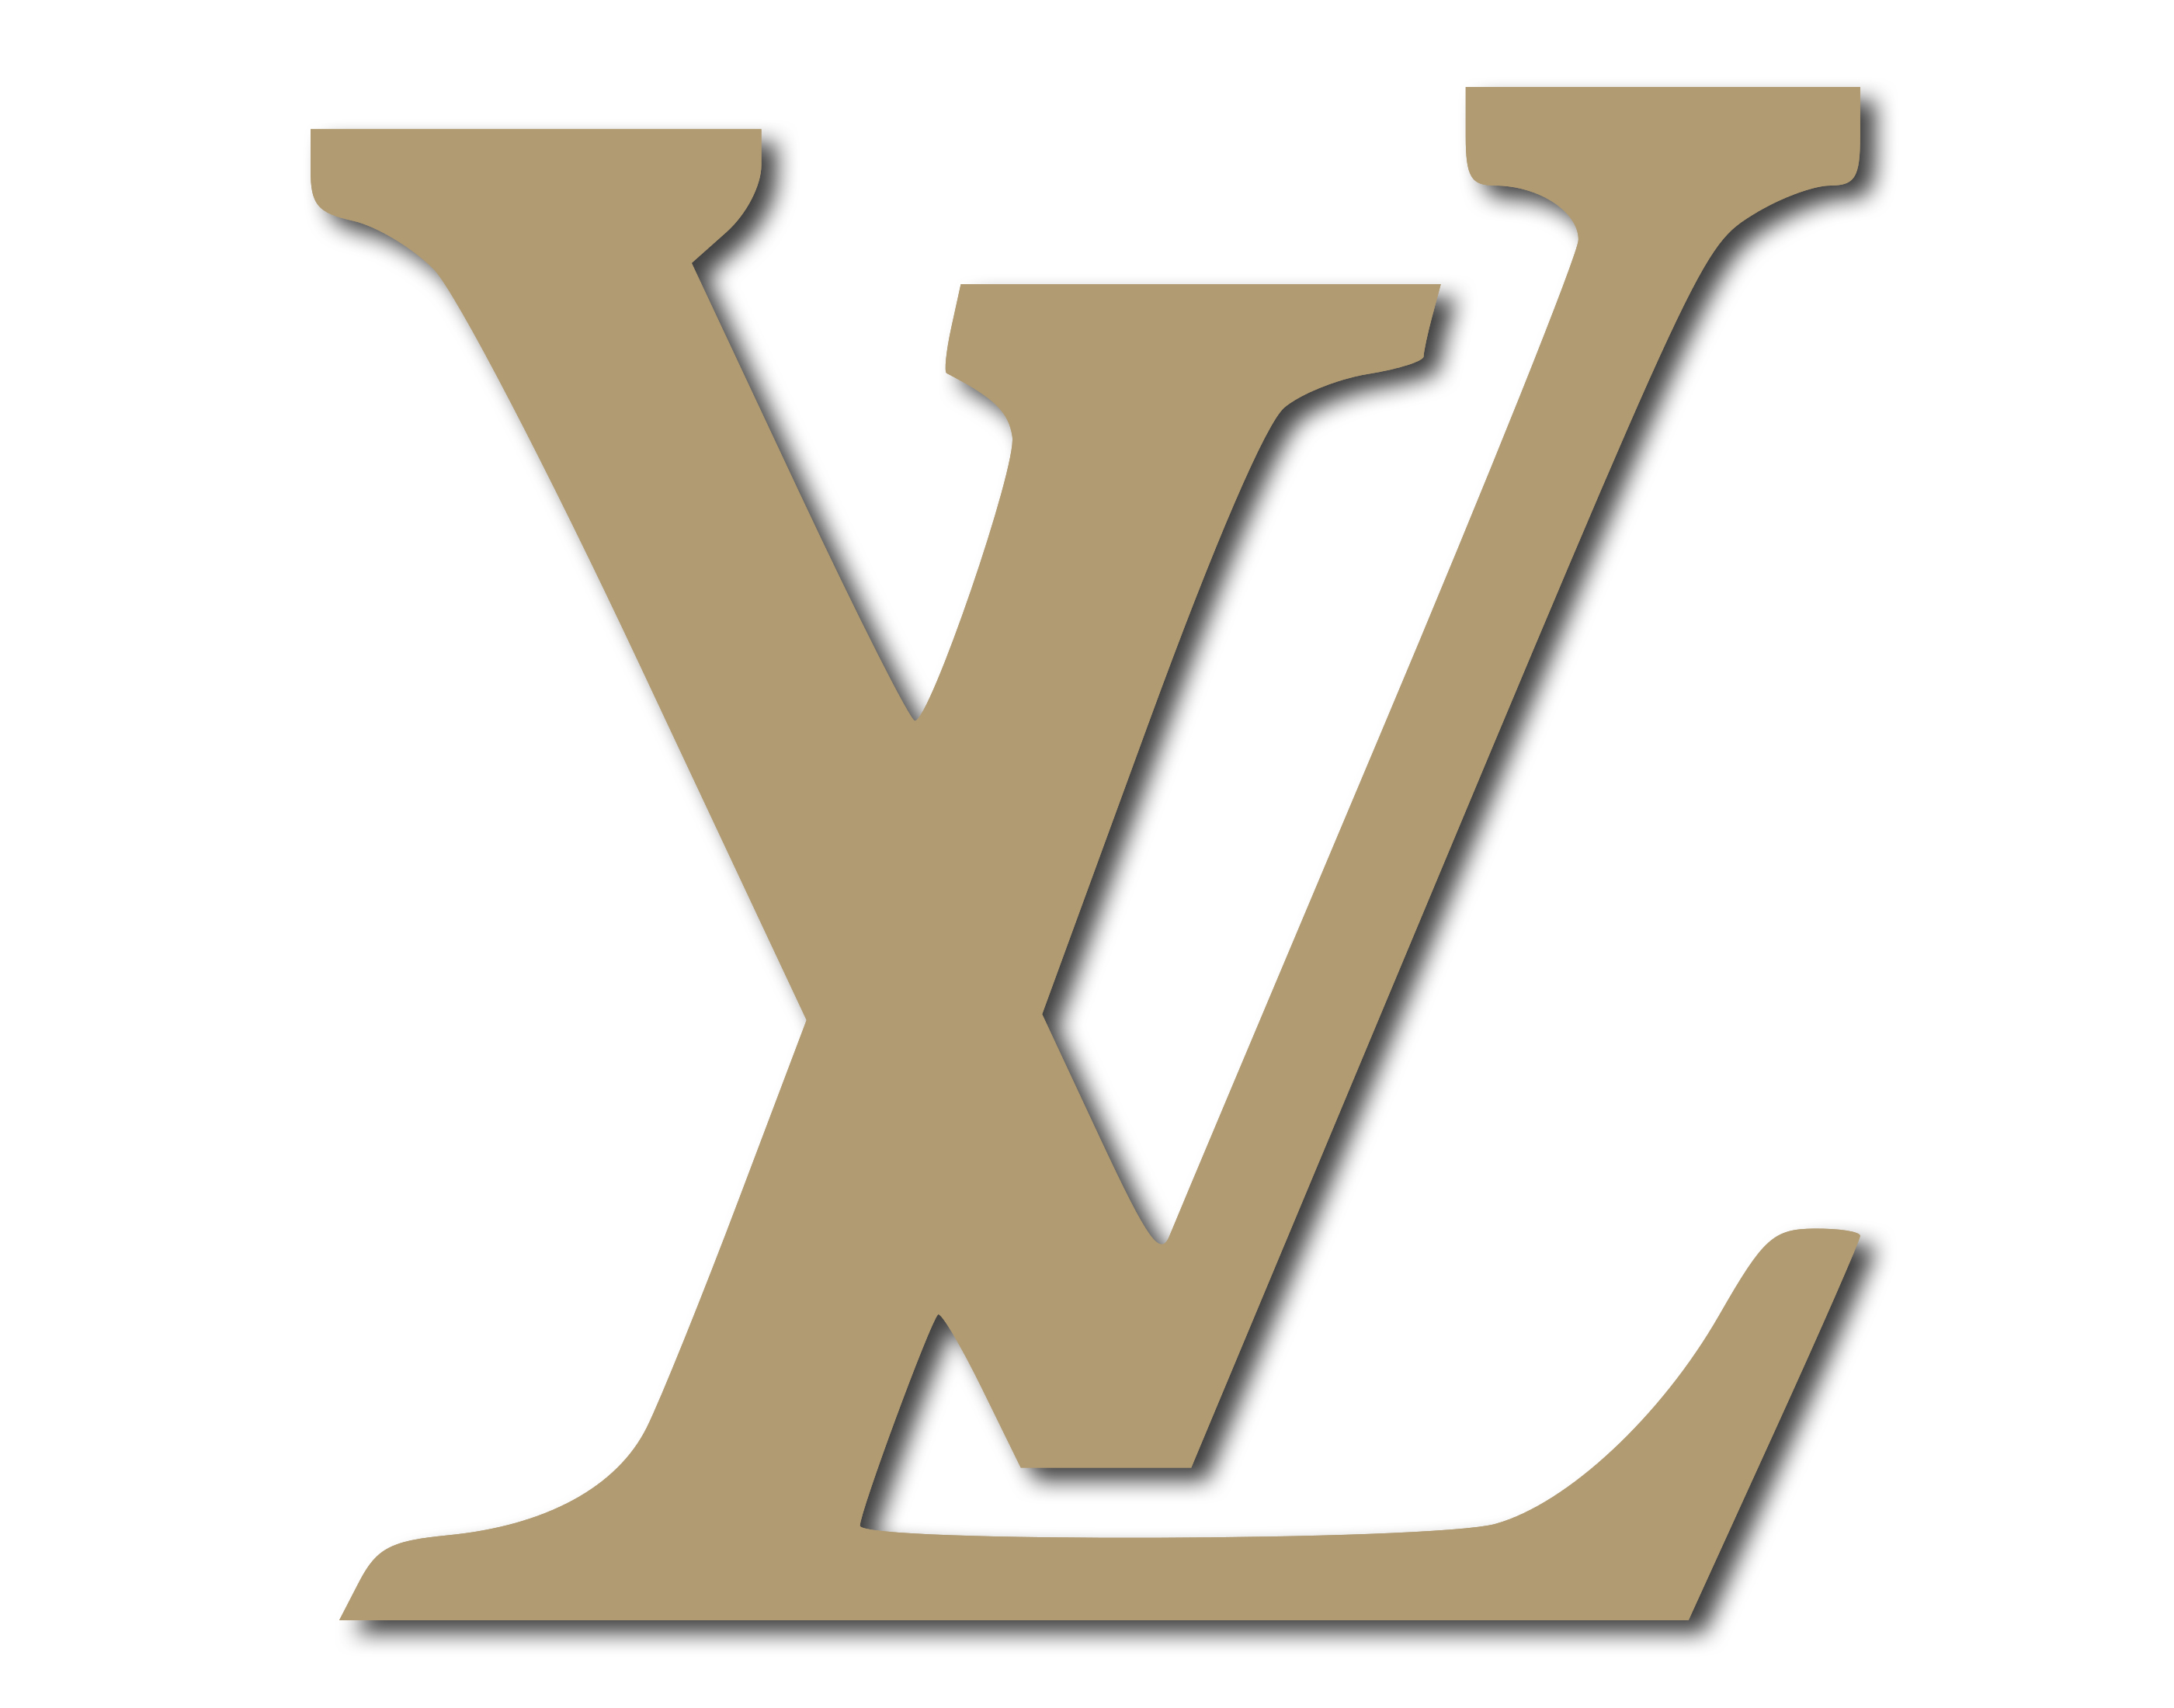 Logo Louis Vuitton A Imprimer